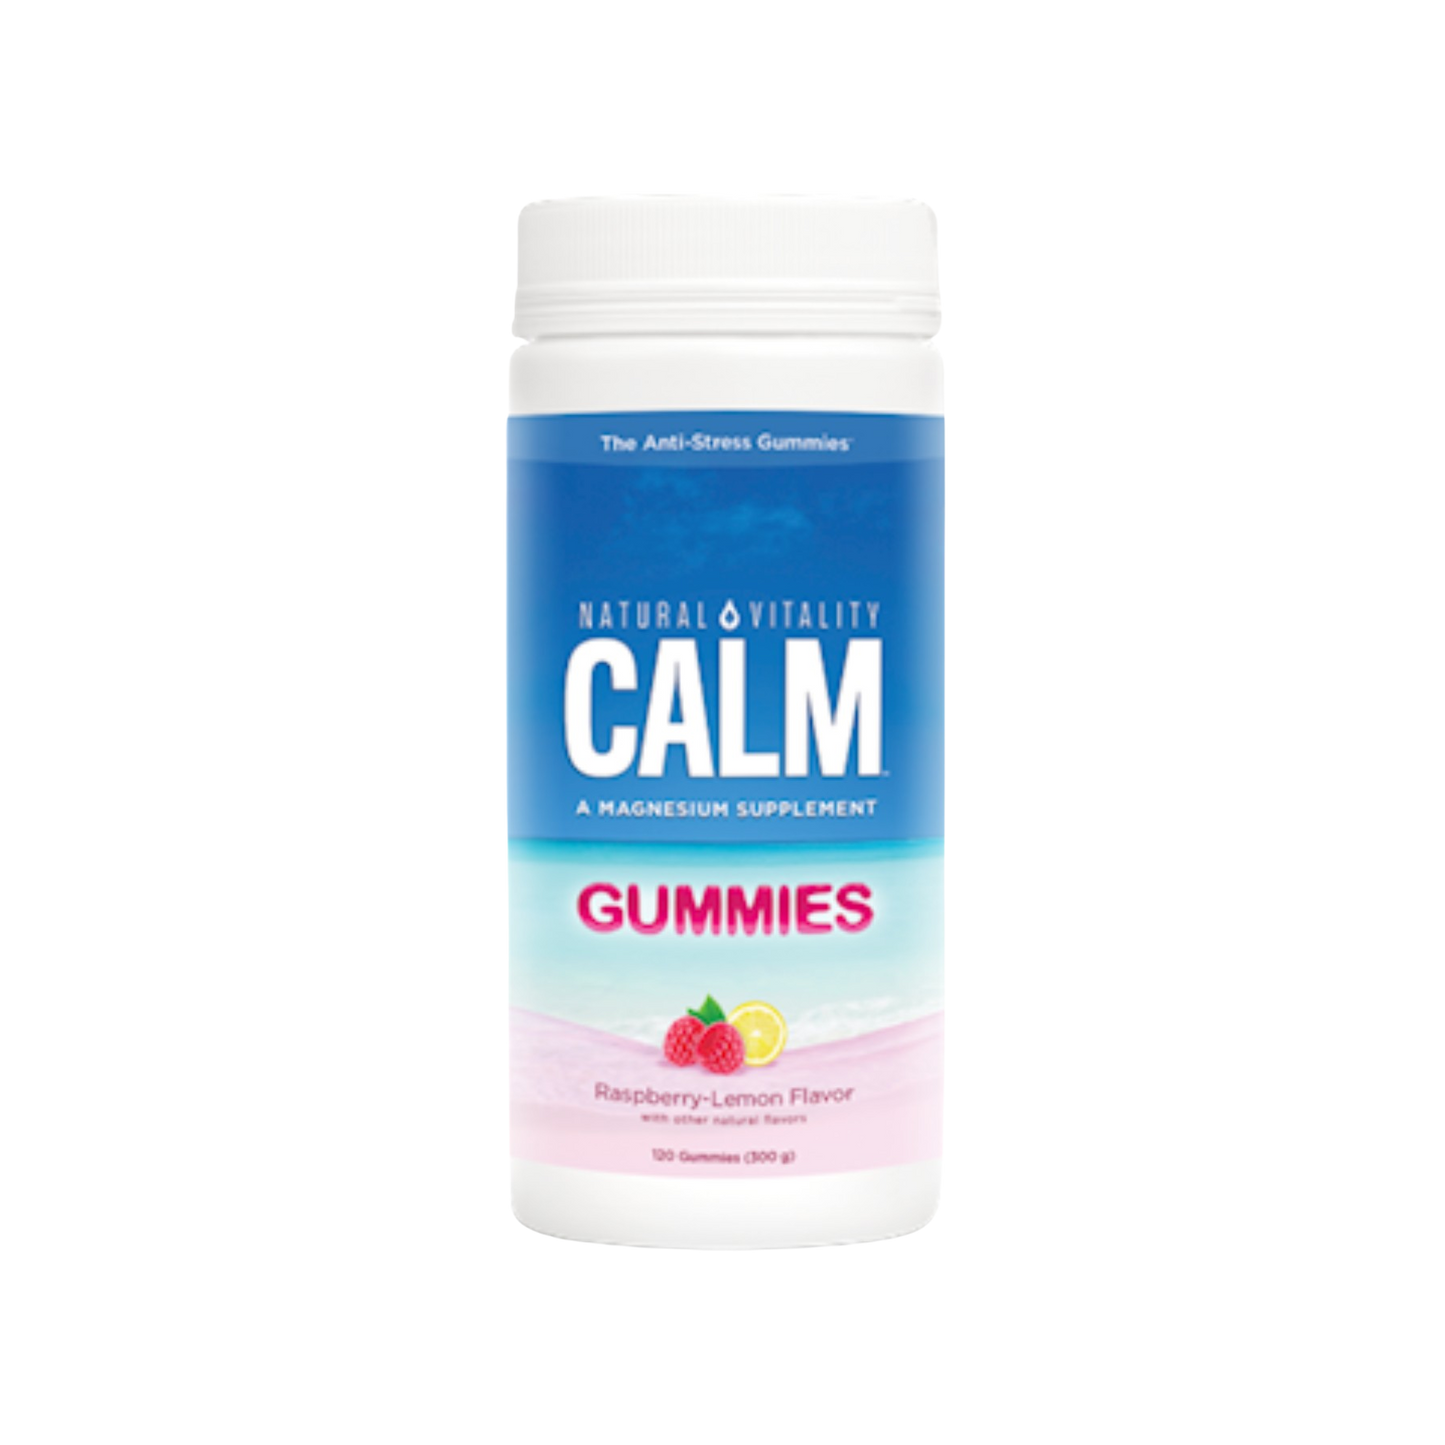 Natural Vitality Natural Calm Gummies